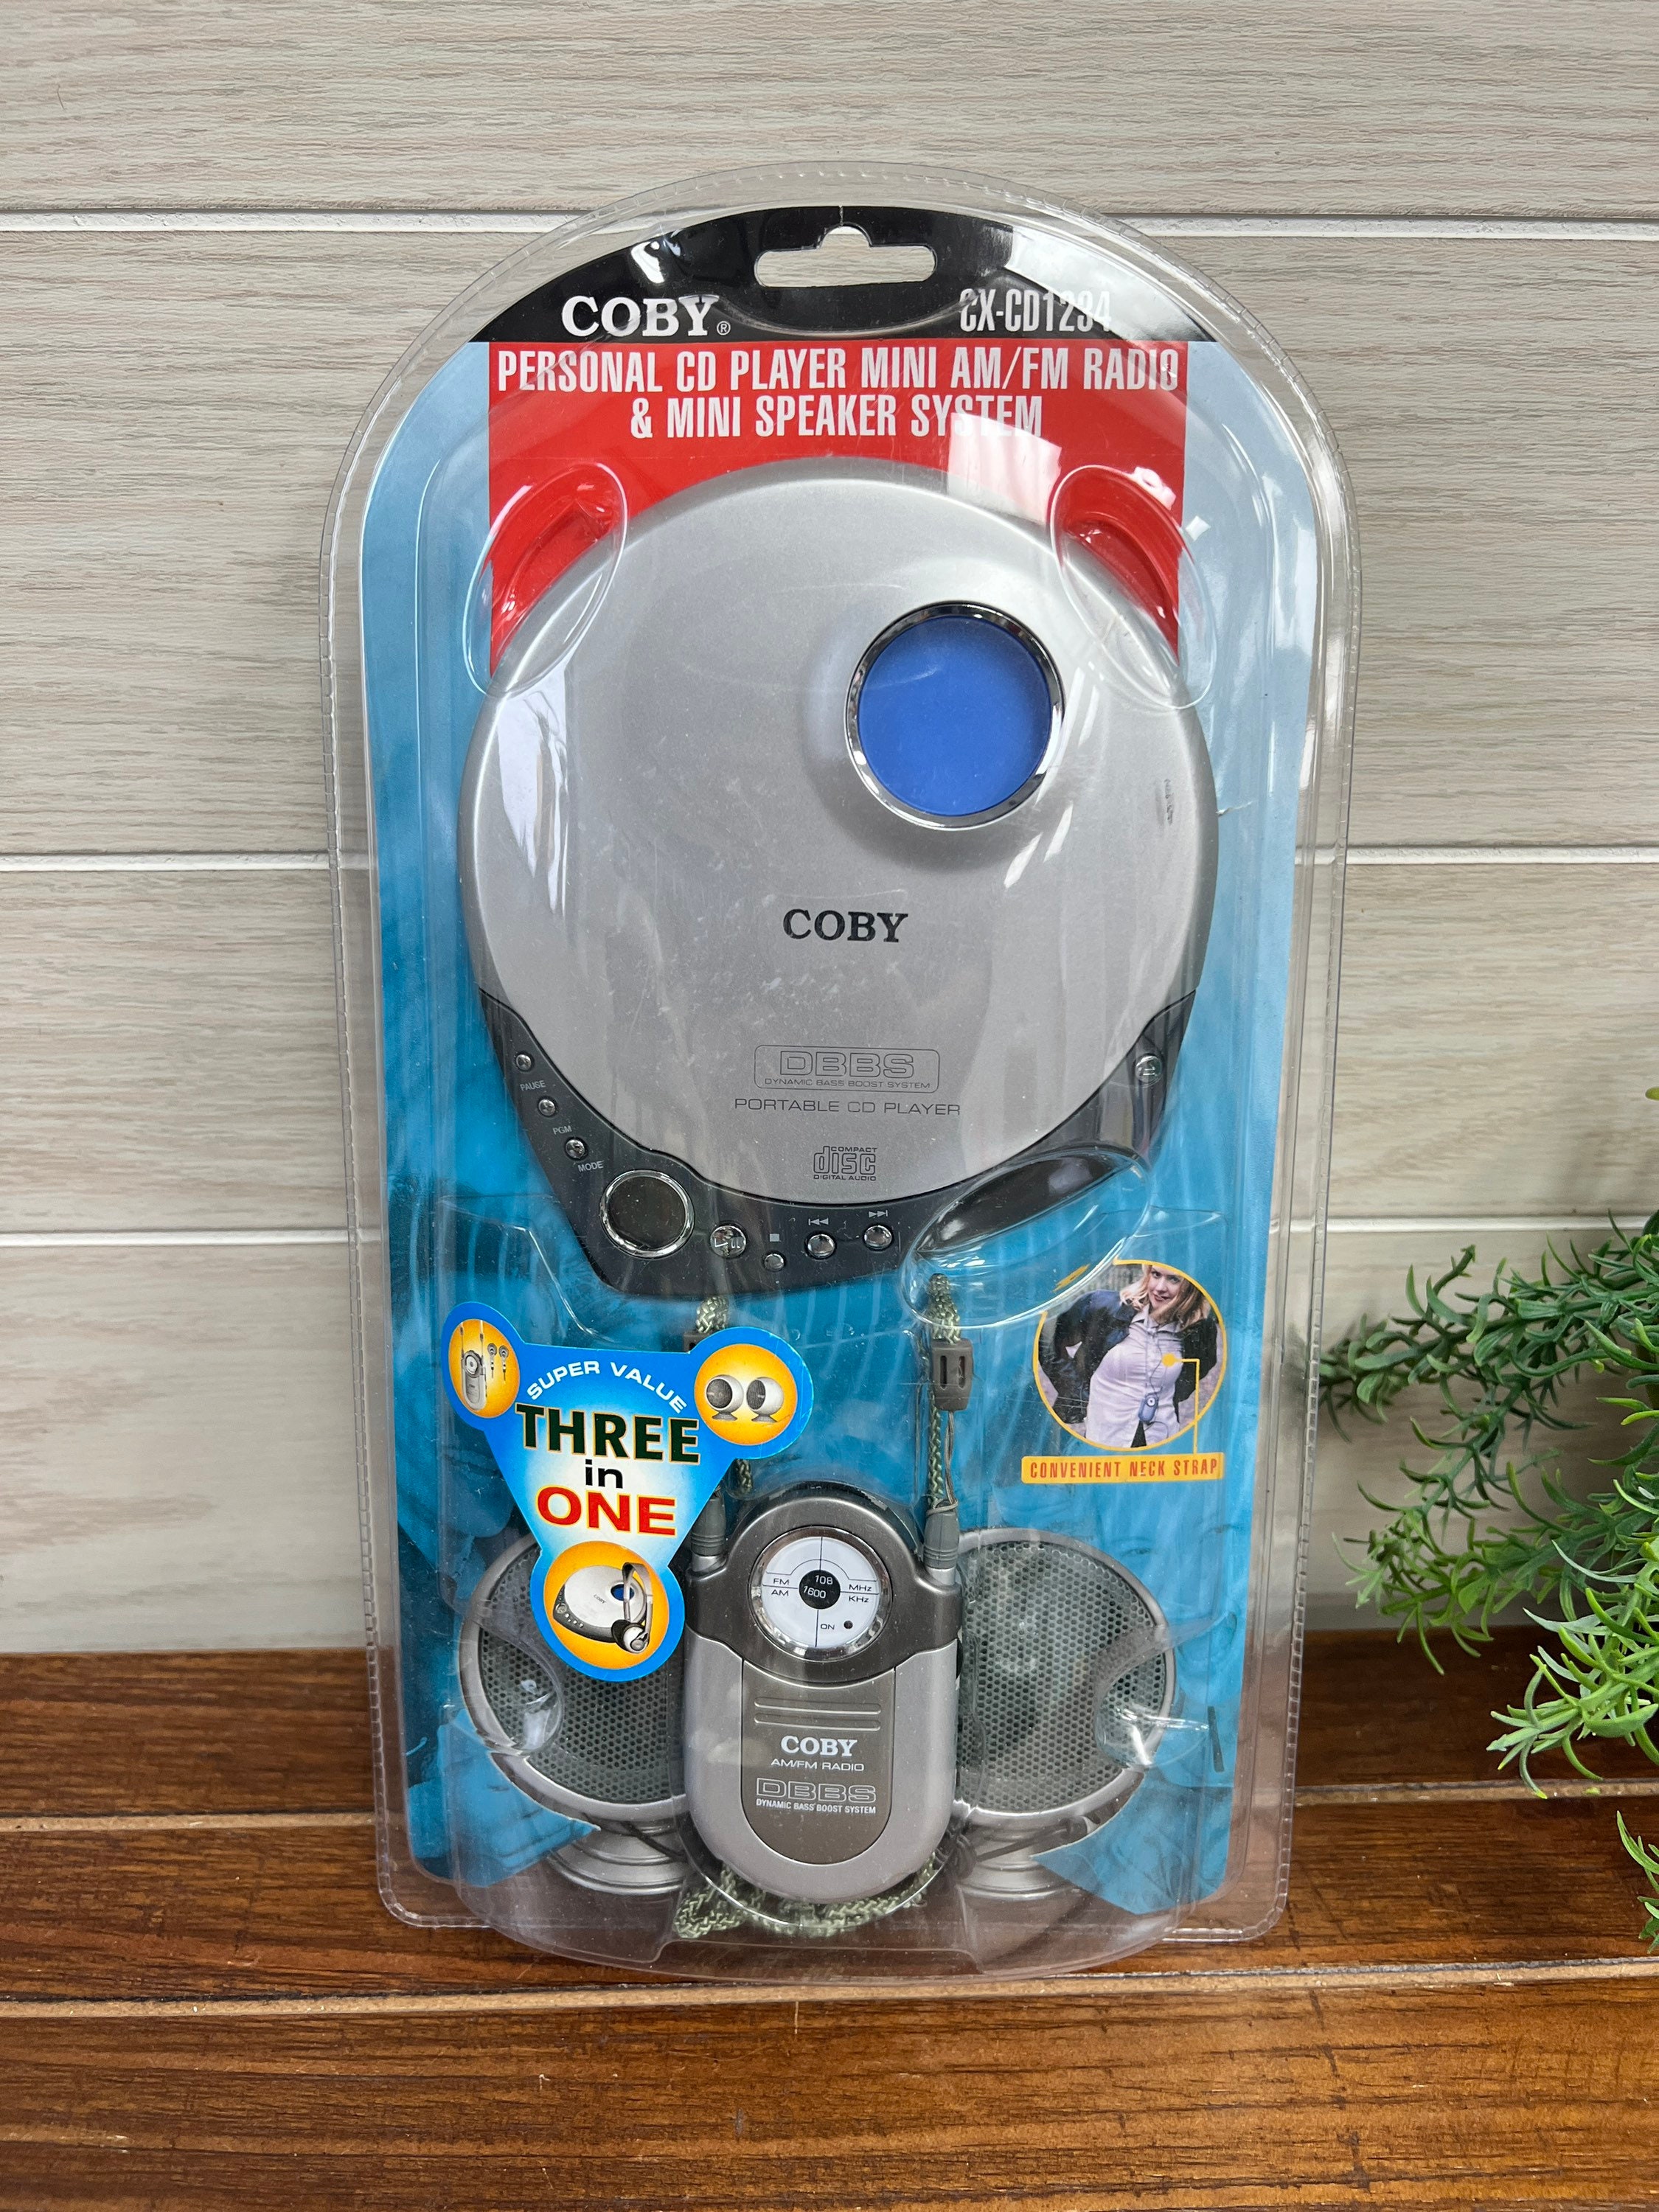 COBY Reproductor De Cd Portatil - Coby